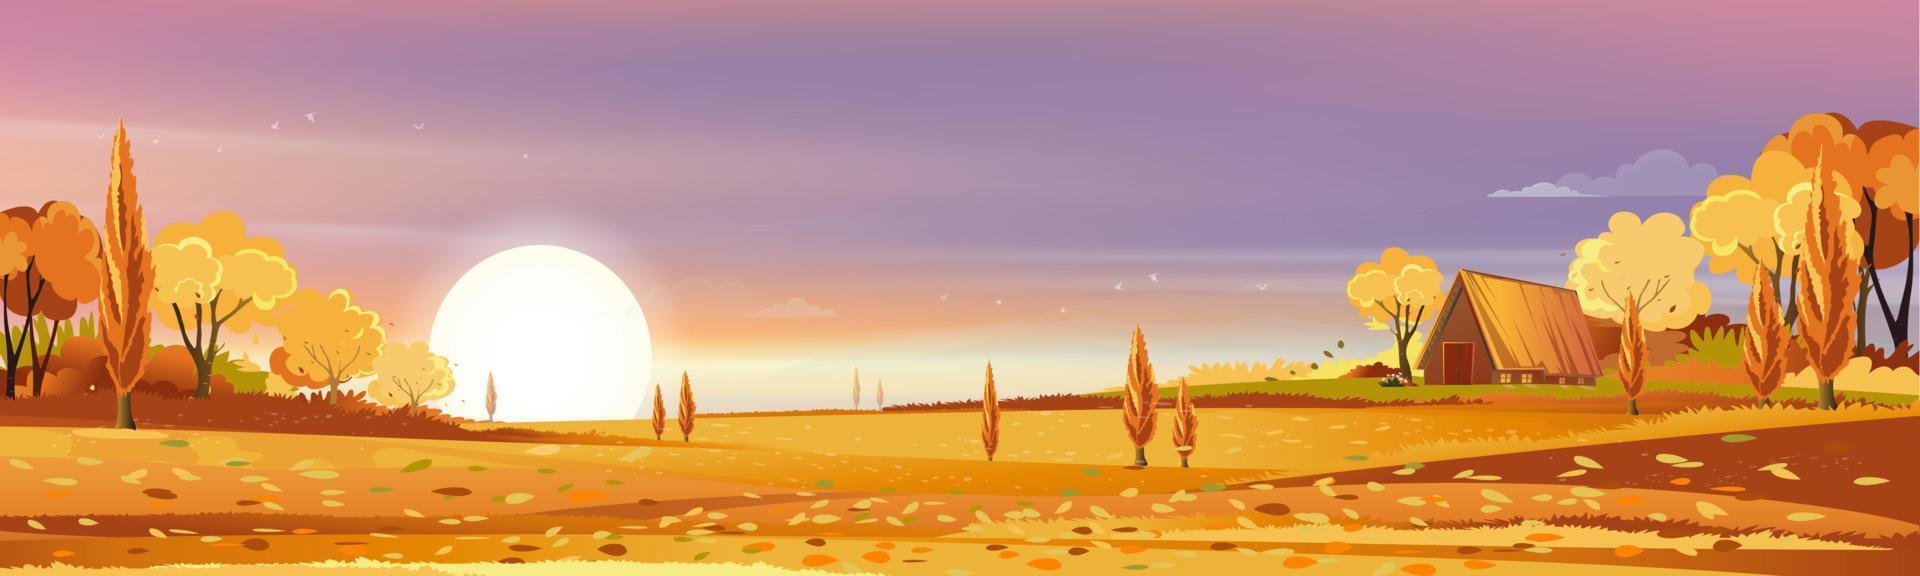 paesaggio rurale autunnale alla luce della sera con tramonto, rosa, cielo arancione e nuvole sullo sfondo, campagna di stagione autunnale del fumetto vettoriale con fienile in legno, albero forestale, campo con alba, banner naturale sullo sfondo